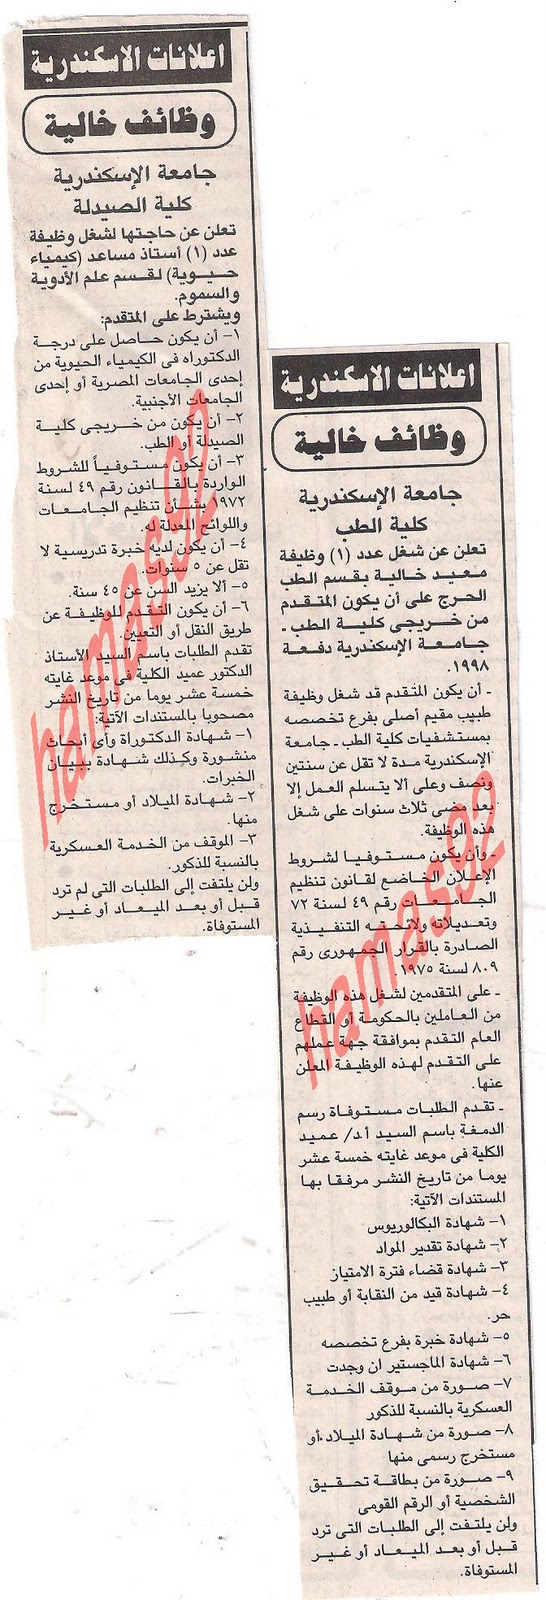 وظائف جريدة الجمهورية الأحد 11\12\2011  Picture+003